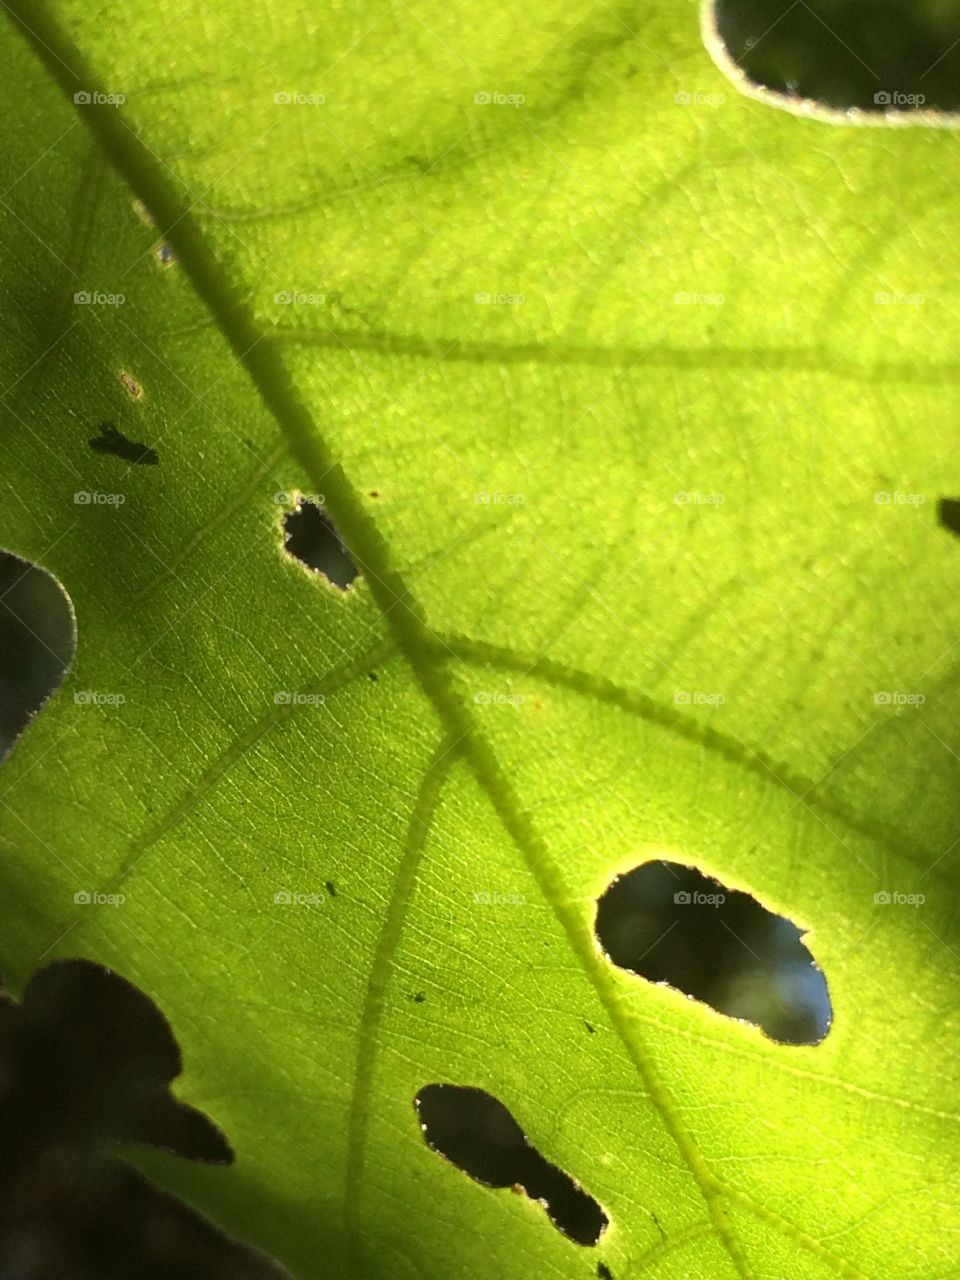 Extreme close-up of damaged leaf